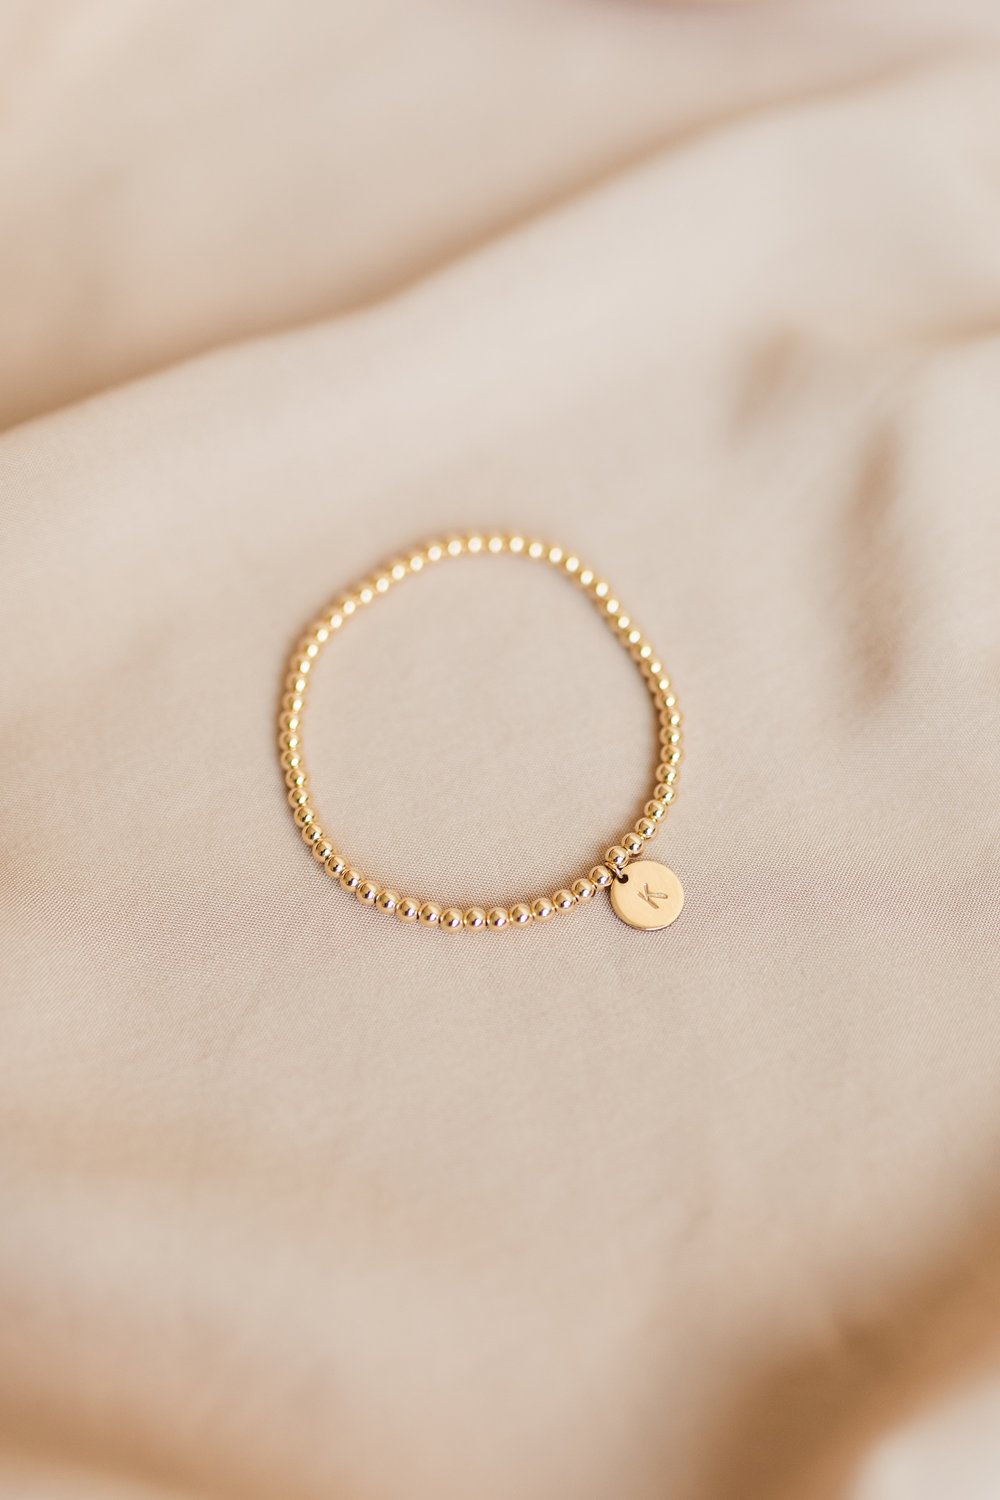 Gold Plated Ladybird Bracelet Ladybug Charm Pendant Gold - Etsy | Ankle  bracelets, Anklets, Ankle bracelets gold